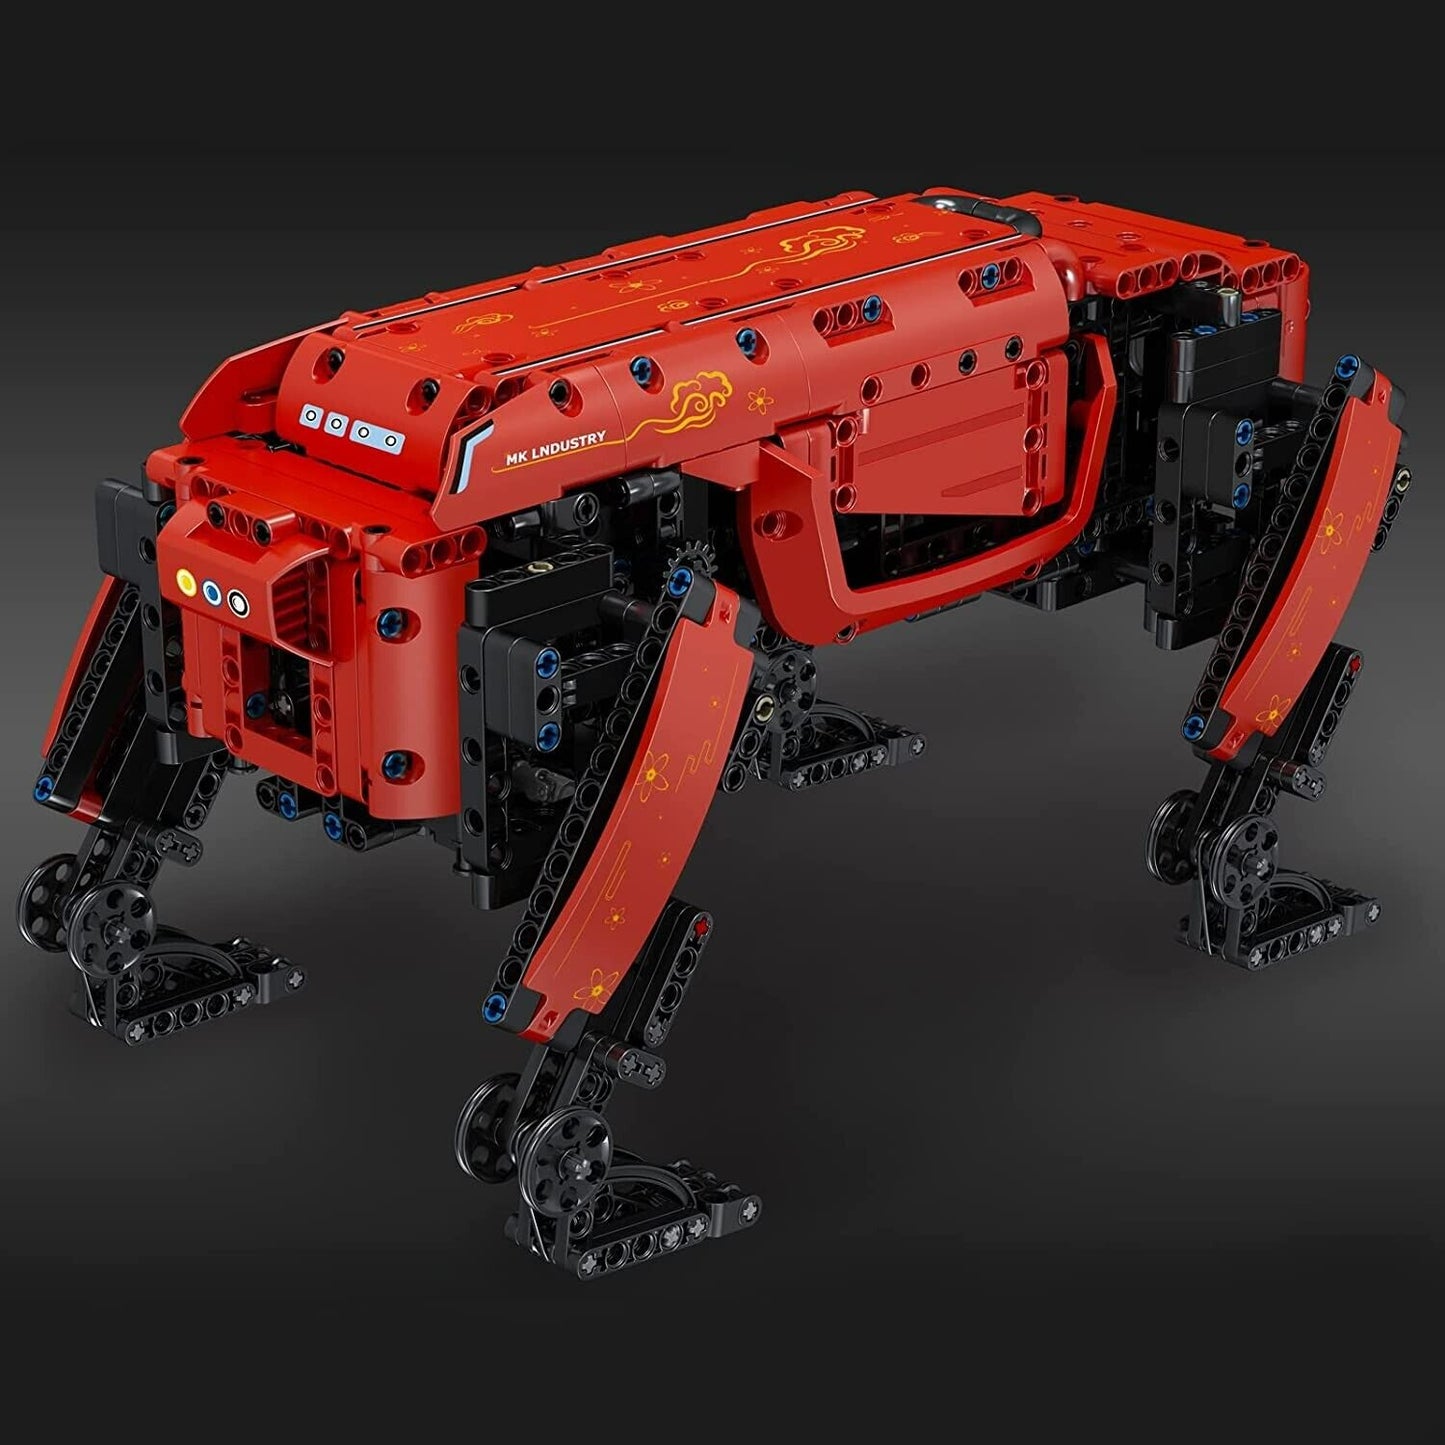 Mould King roter Roboter - Hund 15067 Klemmbaustein Set